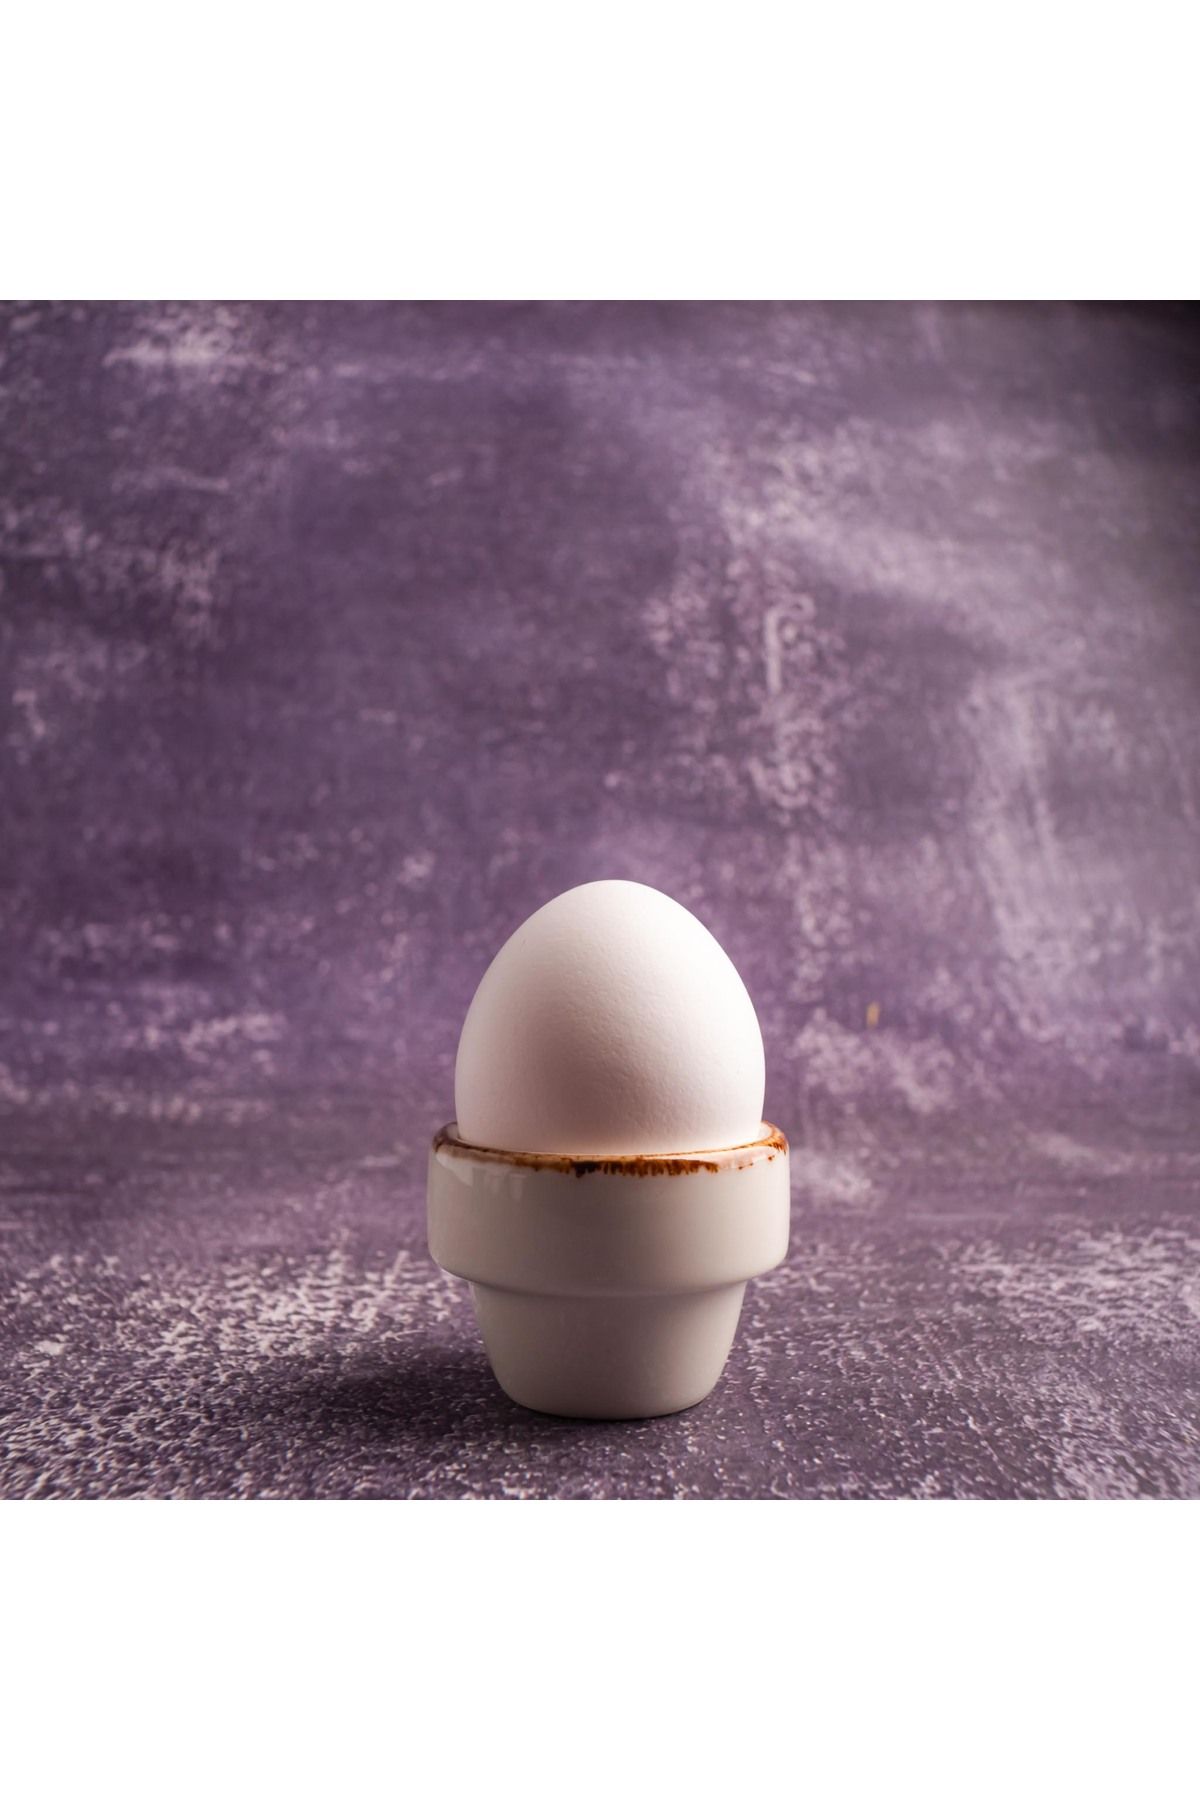 BY BONE Harmony Gleam Porselen Yumurtalık - 2'li Yumurtalık Seti - Sade Beyaz - Günlük - Modern - Şık- Zarif